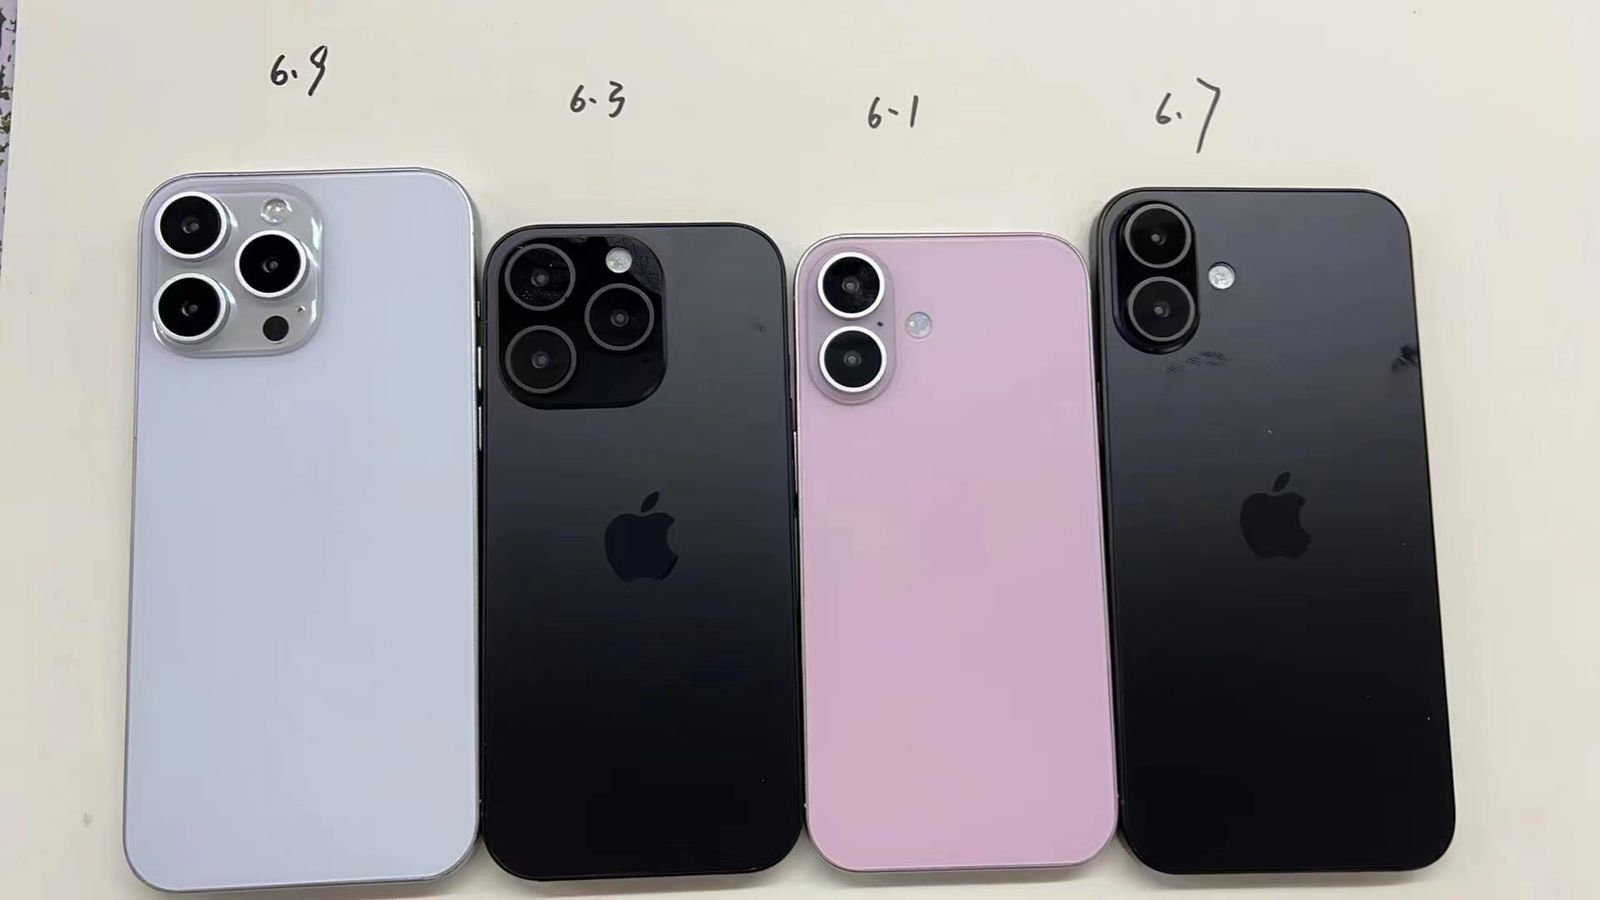 Da iPhoneIslam.com, quattro modelli di iPhone disposti da sinistra a destra: iPhone 13 pro max in argento, iPhone 12 in nero, iPhone 11 in rosa e iPhone XR in nero, visti dal retro su uno sfondo chiaro.